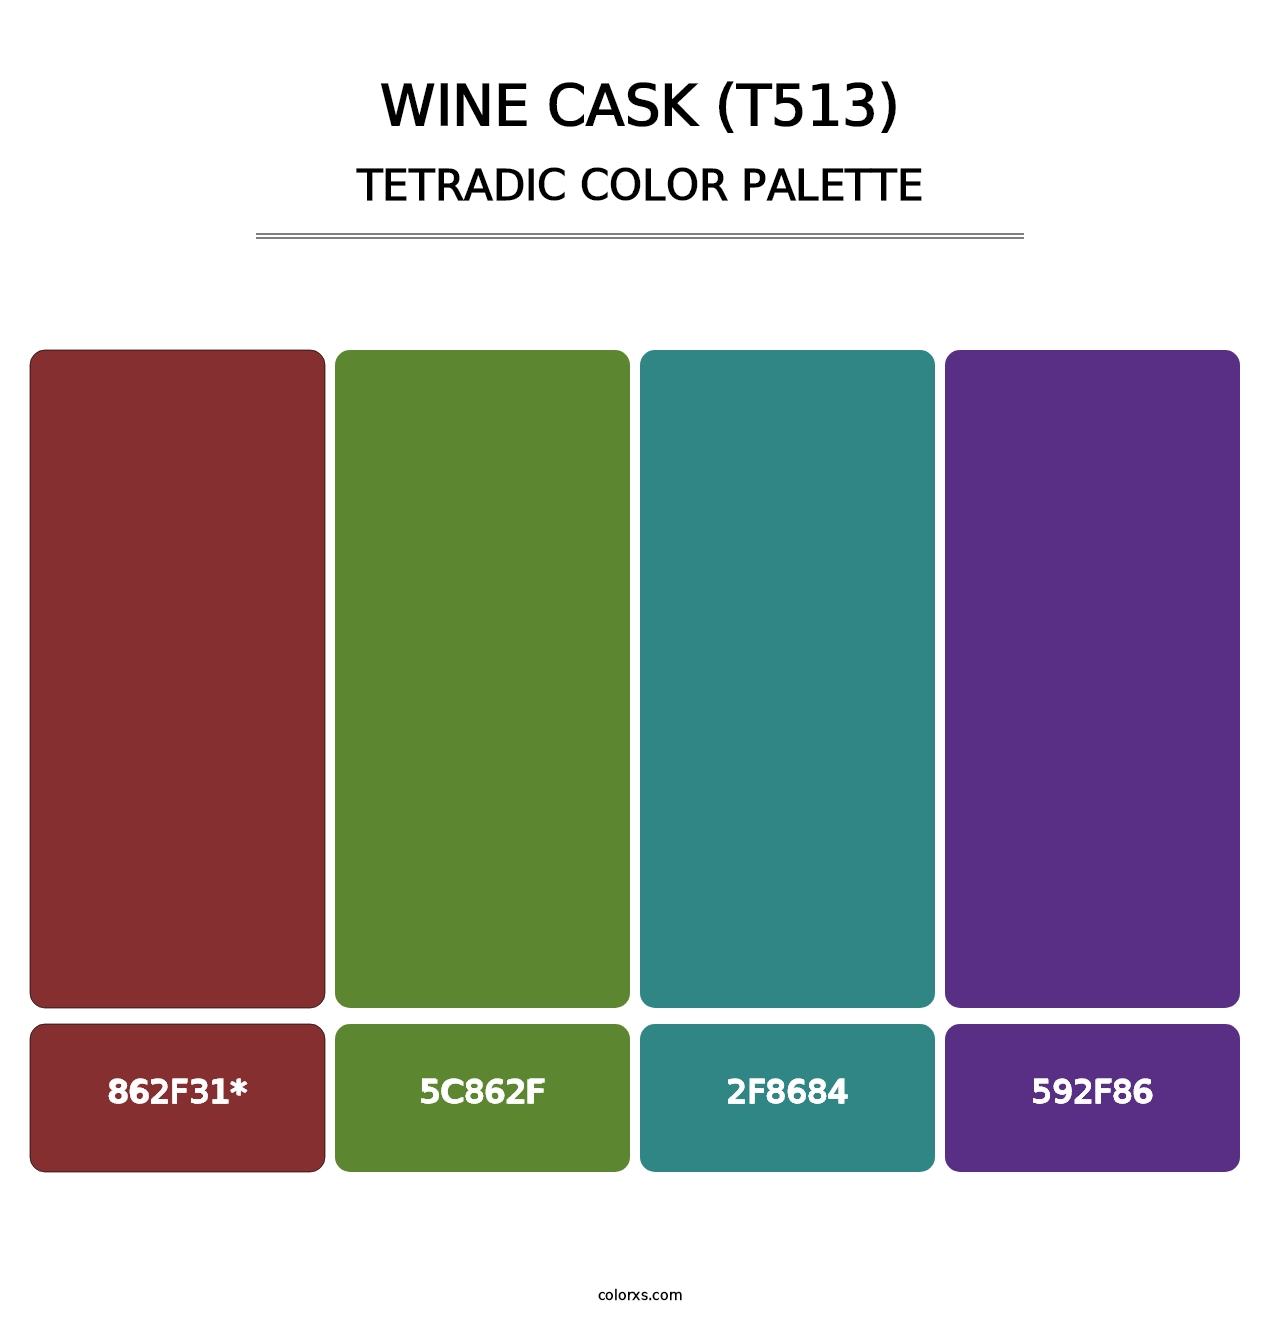 Wine Cask (T513) - Tetradic Color Palette